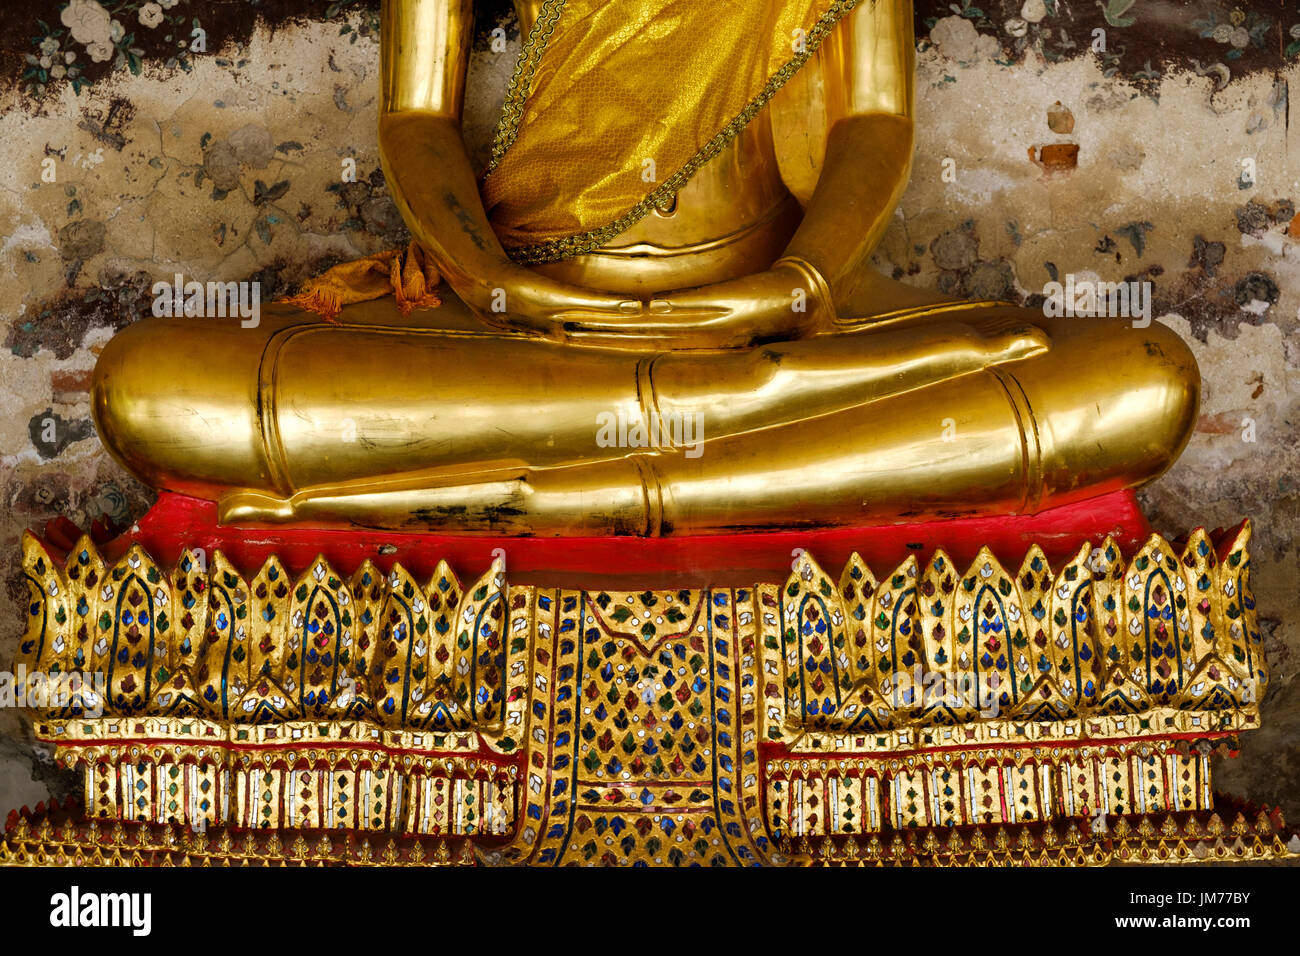 Detalle de las manos, las piernas y el pedestal de la estatua de Buda de oro en lotus pose, Wat Suthat Thepwararam, Bangkok, Tailandia. Foto de stock